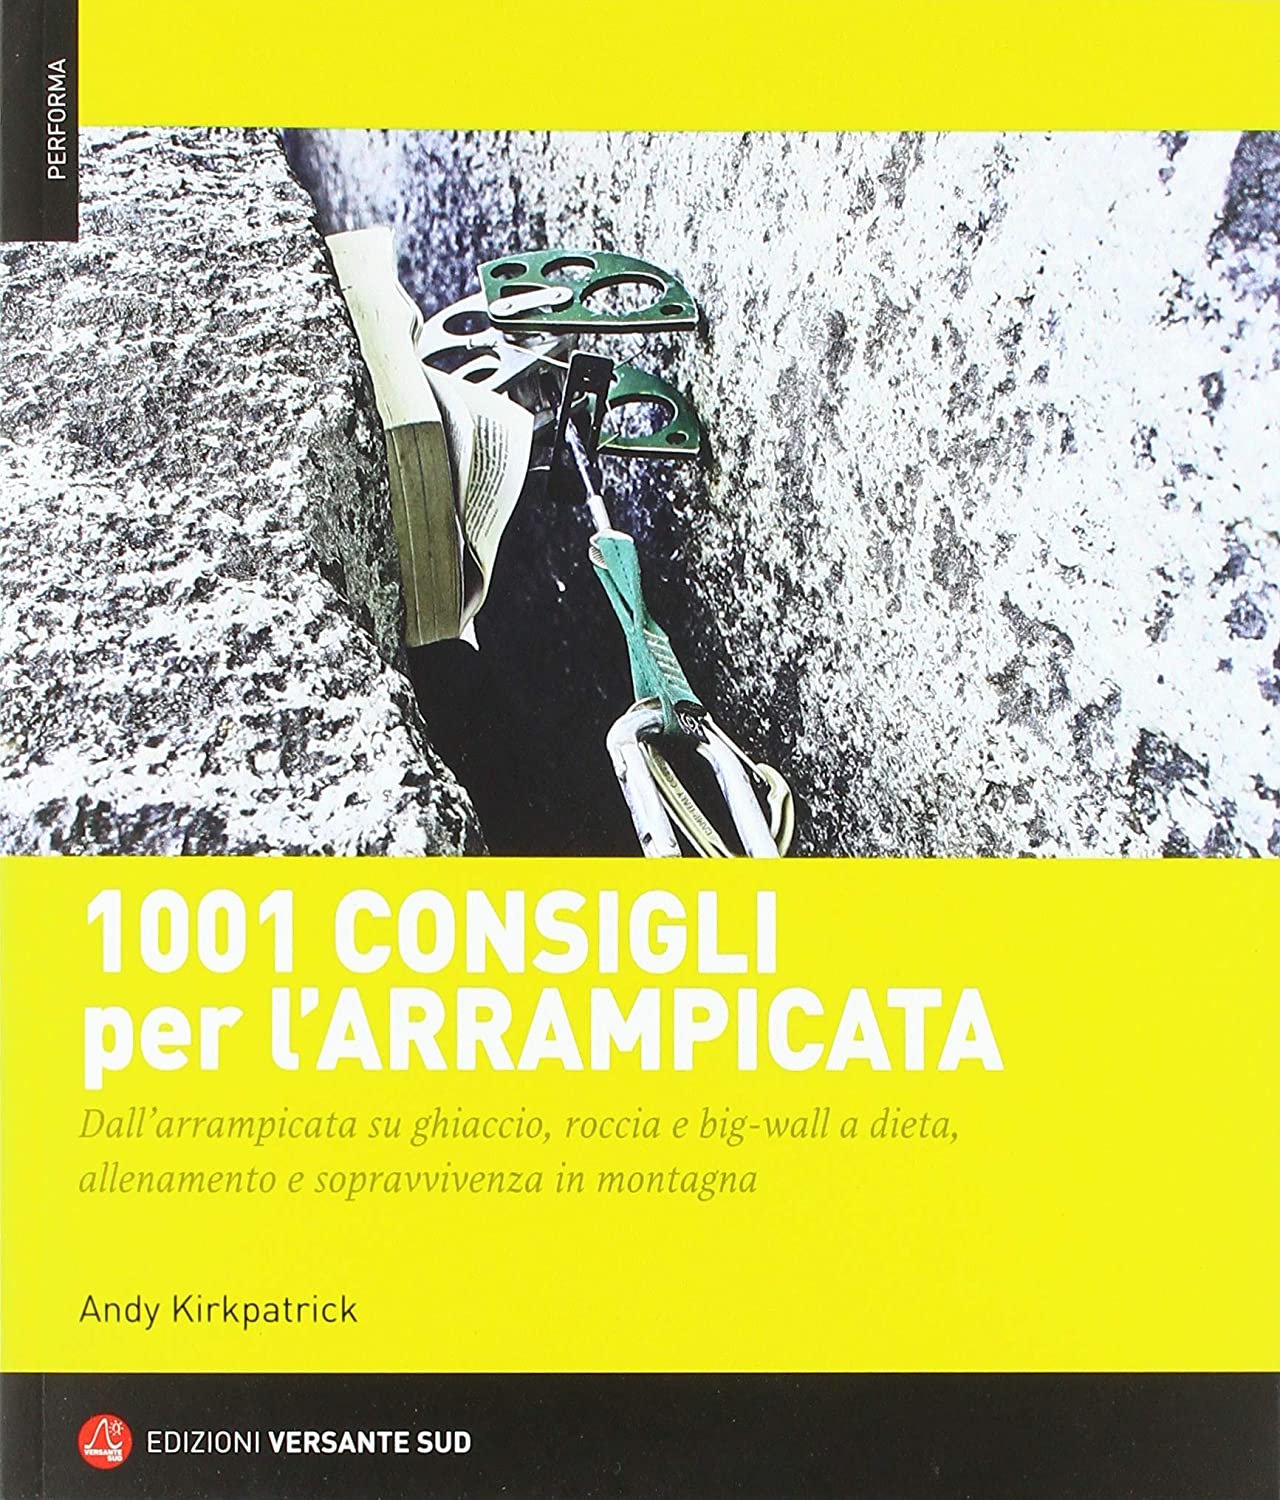 Libri Andy Kirkpatrick - 1001 Consigli Per L'arrampicata NUOVO SIGILLATO, EDIZIONE DEL 09/11/2018 SUBITO DISPONIBILE